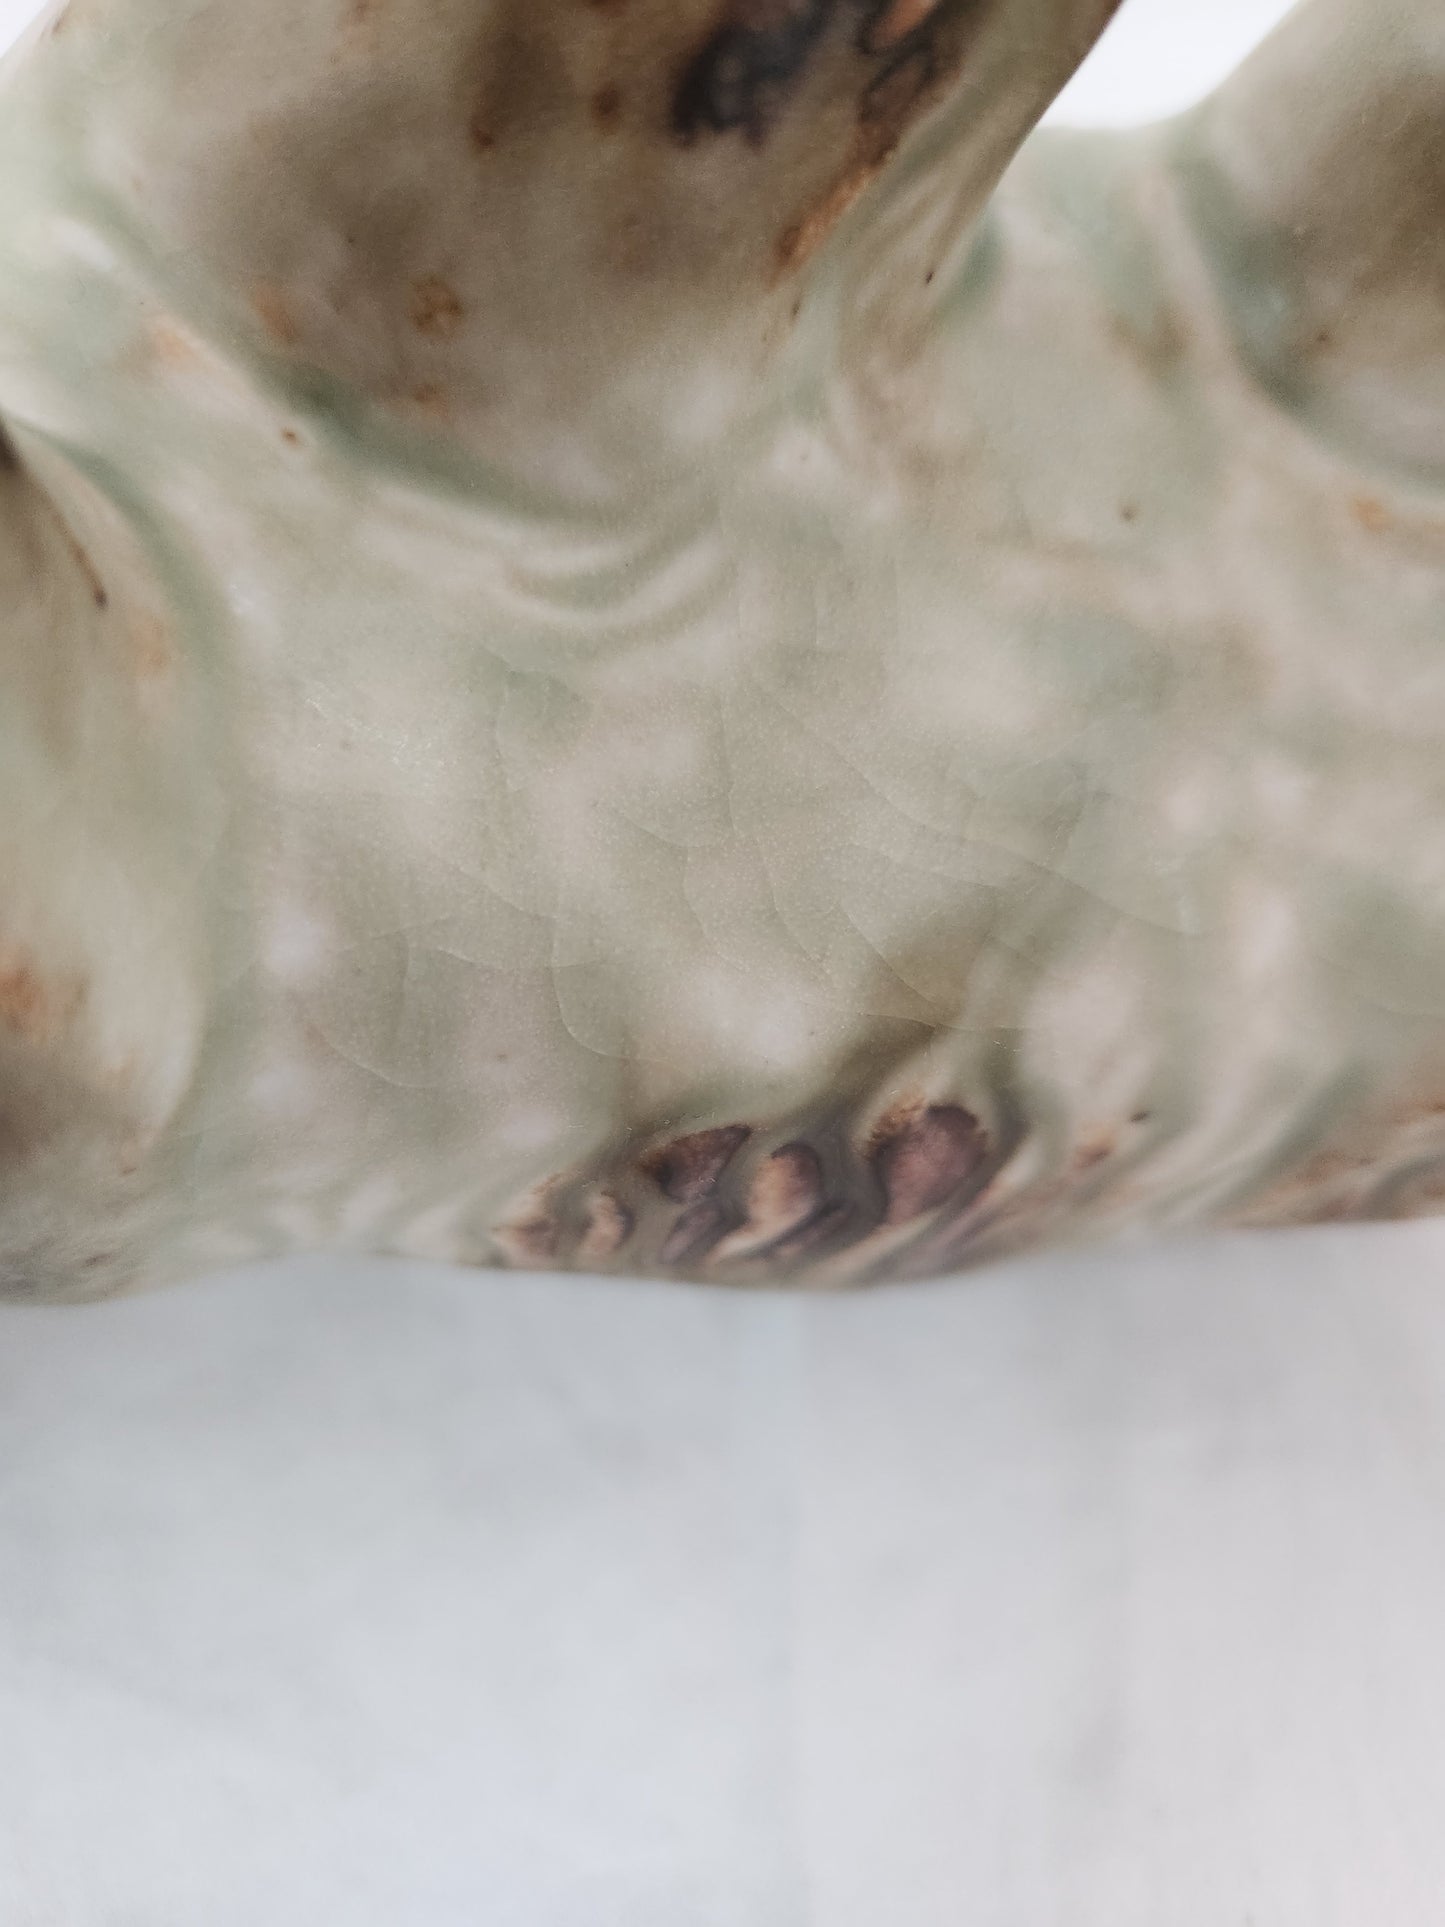 Knud Kyhn Ceramic Bear #20155 Produced by Royal Copenhagen in Denmark